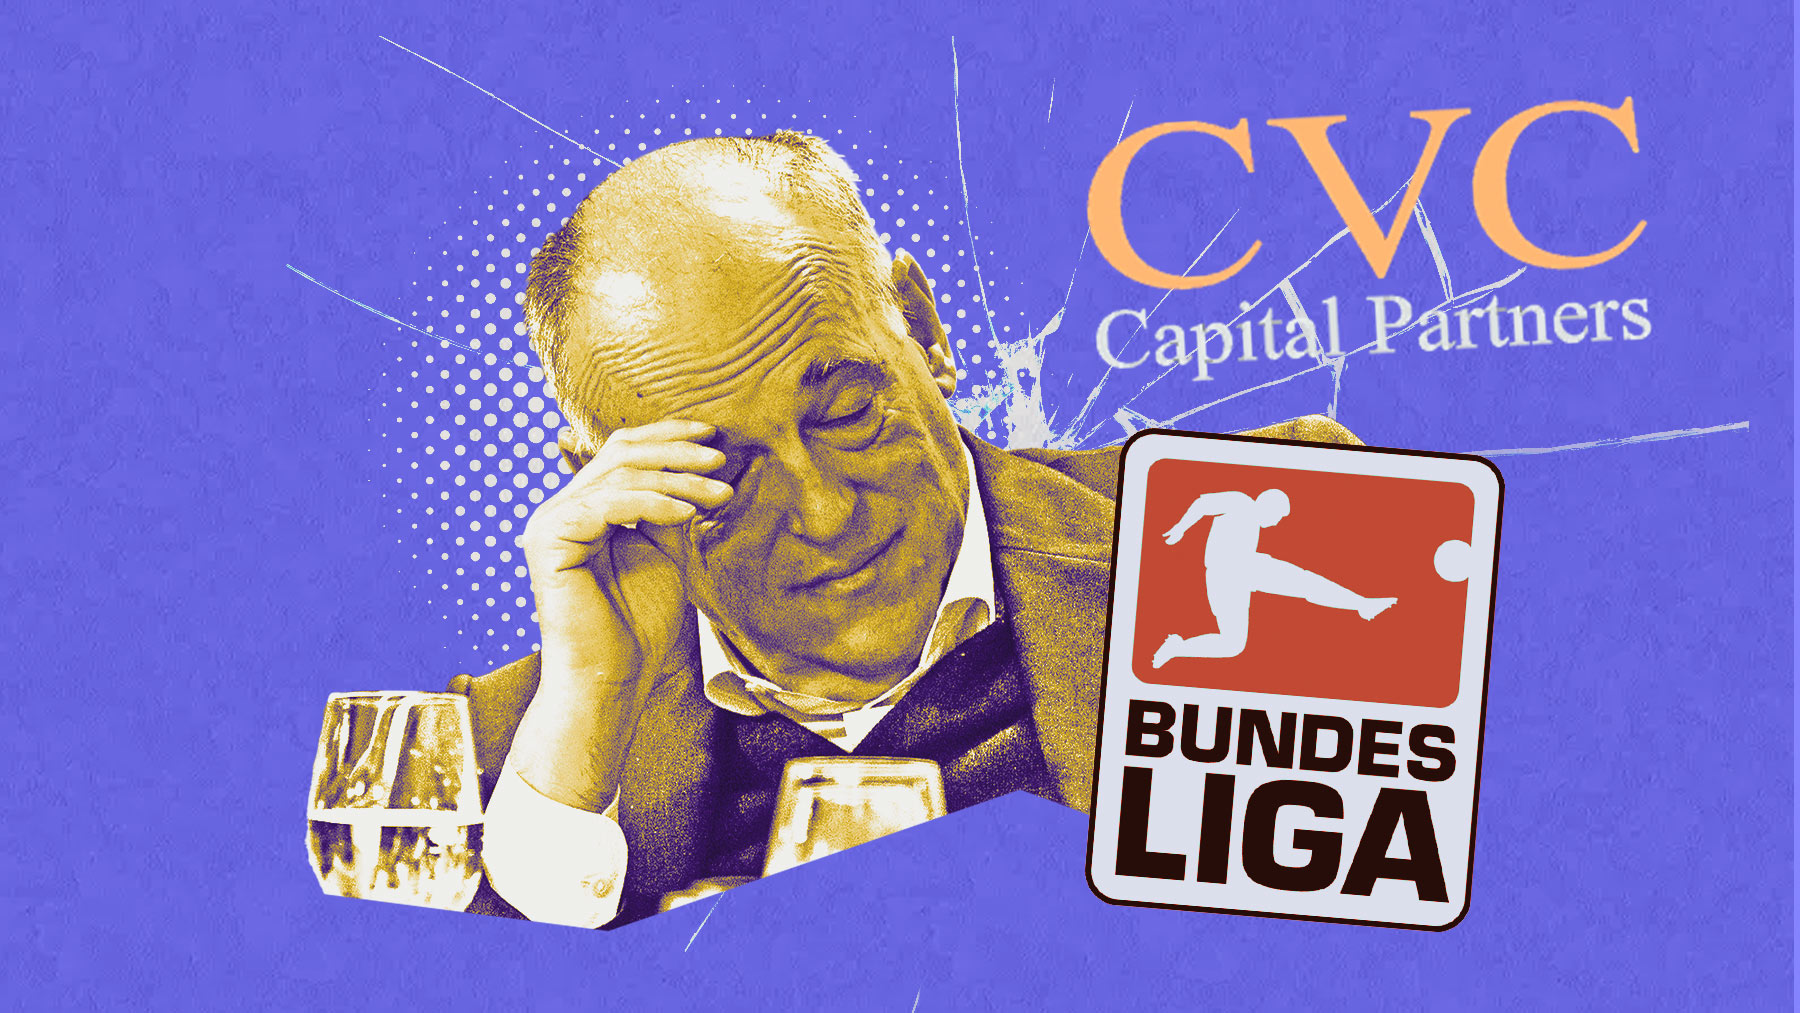 La Bundesliga ha rechazado el acuerdo con CVC que sí firmó la LIga